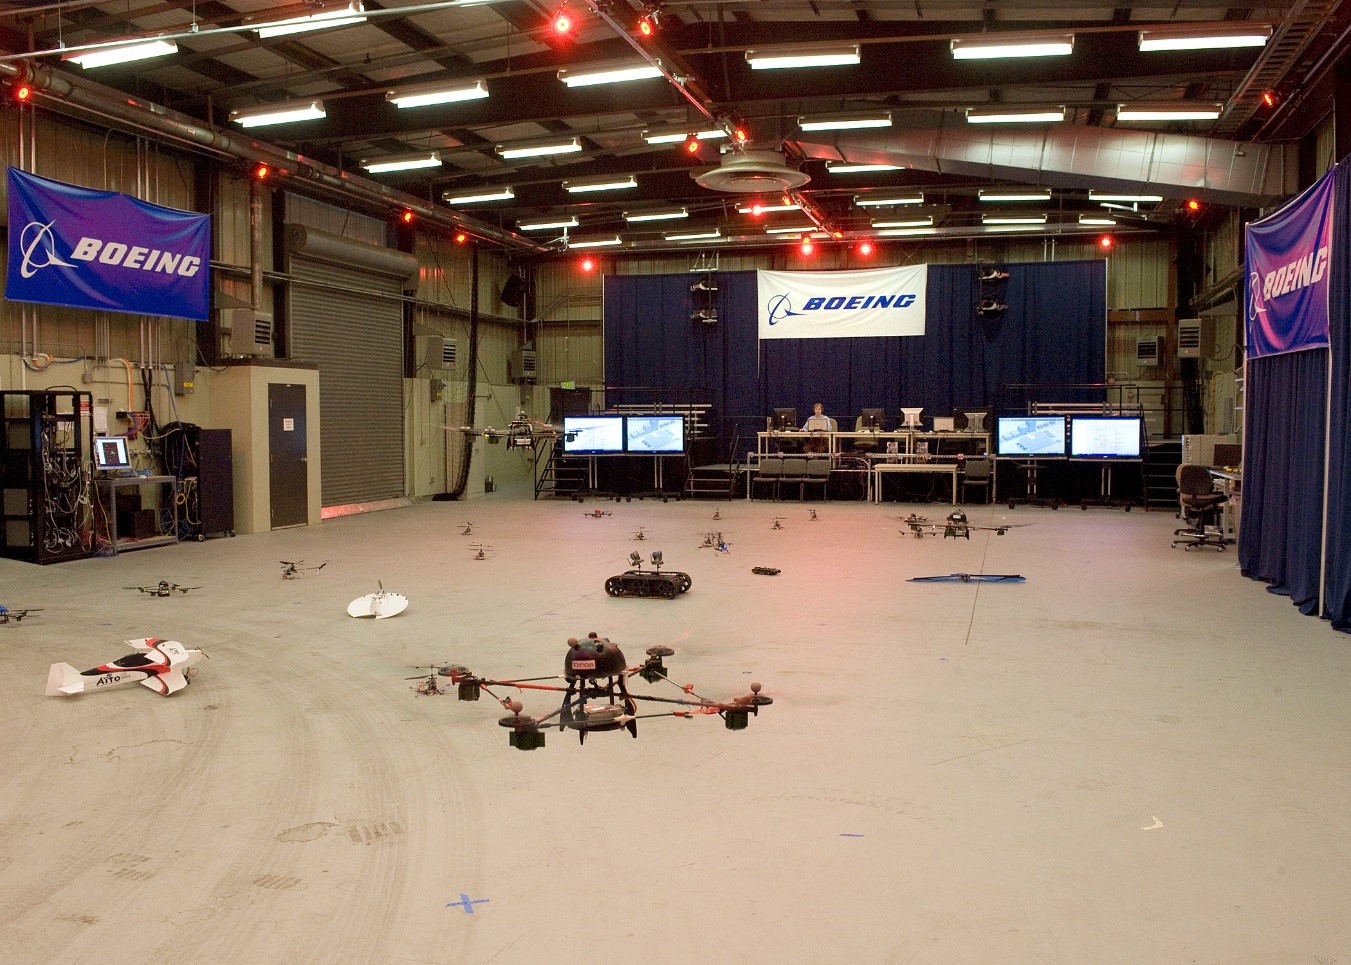 図3：シアトルのボーイング社の試験施設。外部の視覚システムによって用いられているカメラの位置は、天井の赤い照明が取り付けられている場所。